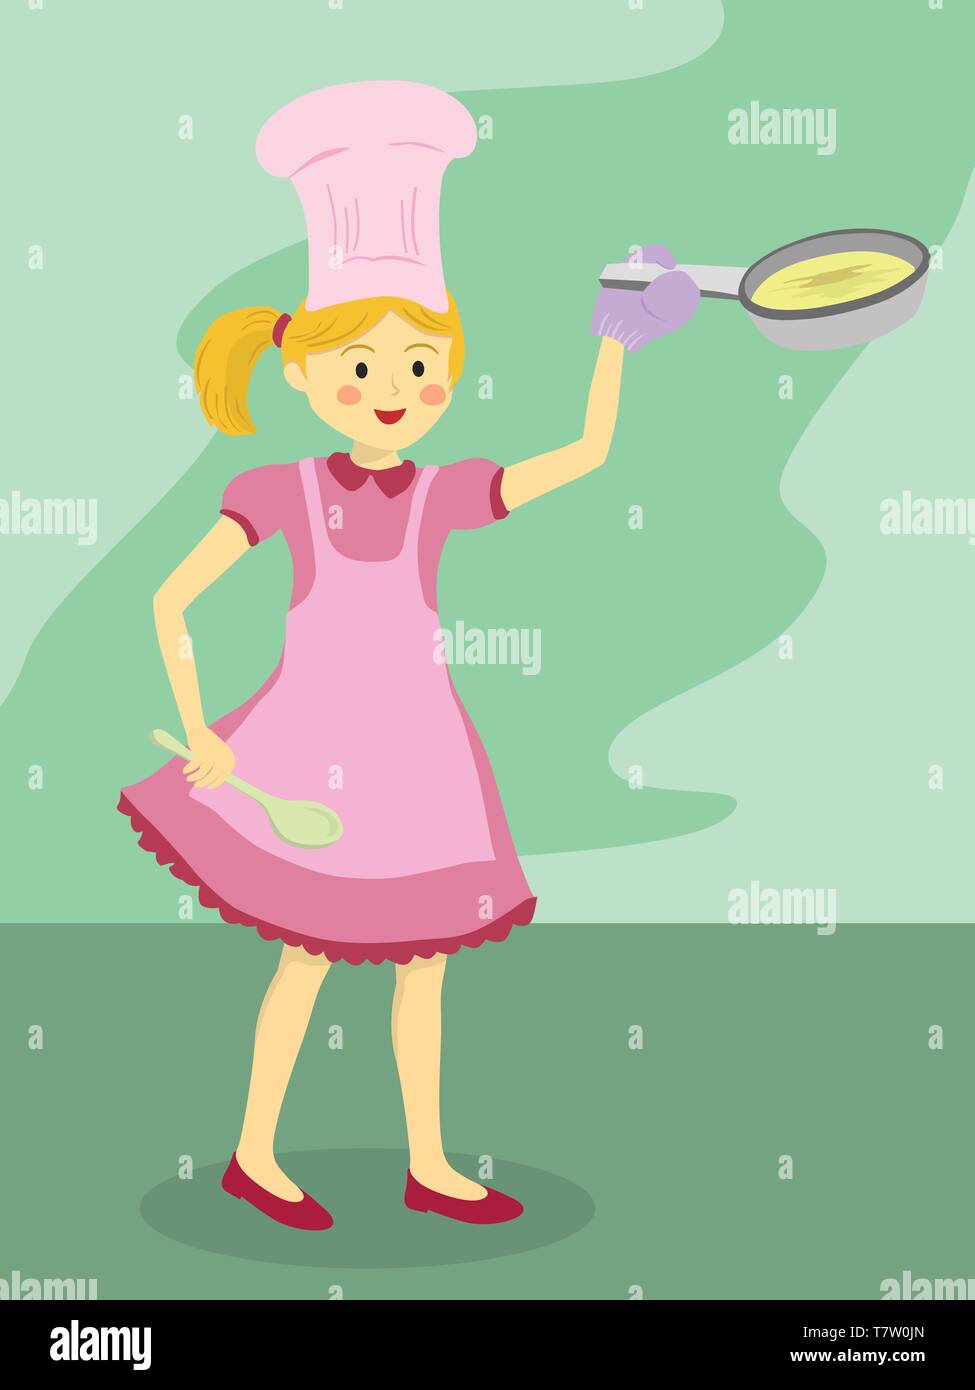 Chef de fille avec robe rose et tablier rose holding poêle et louche sur fond vert Illustration de Vecteur